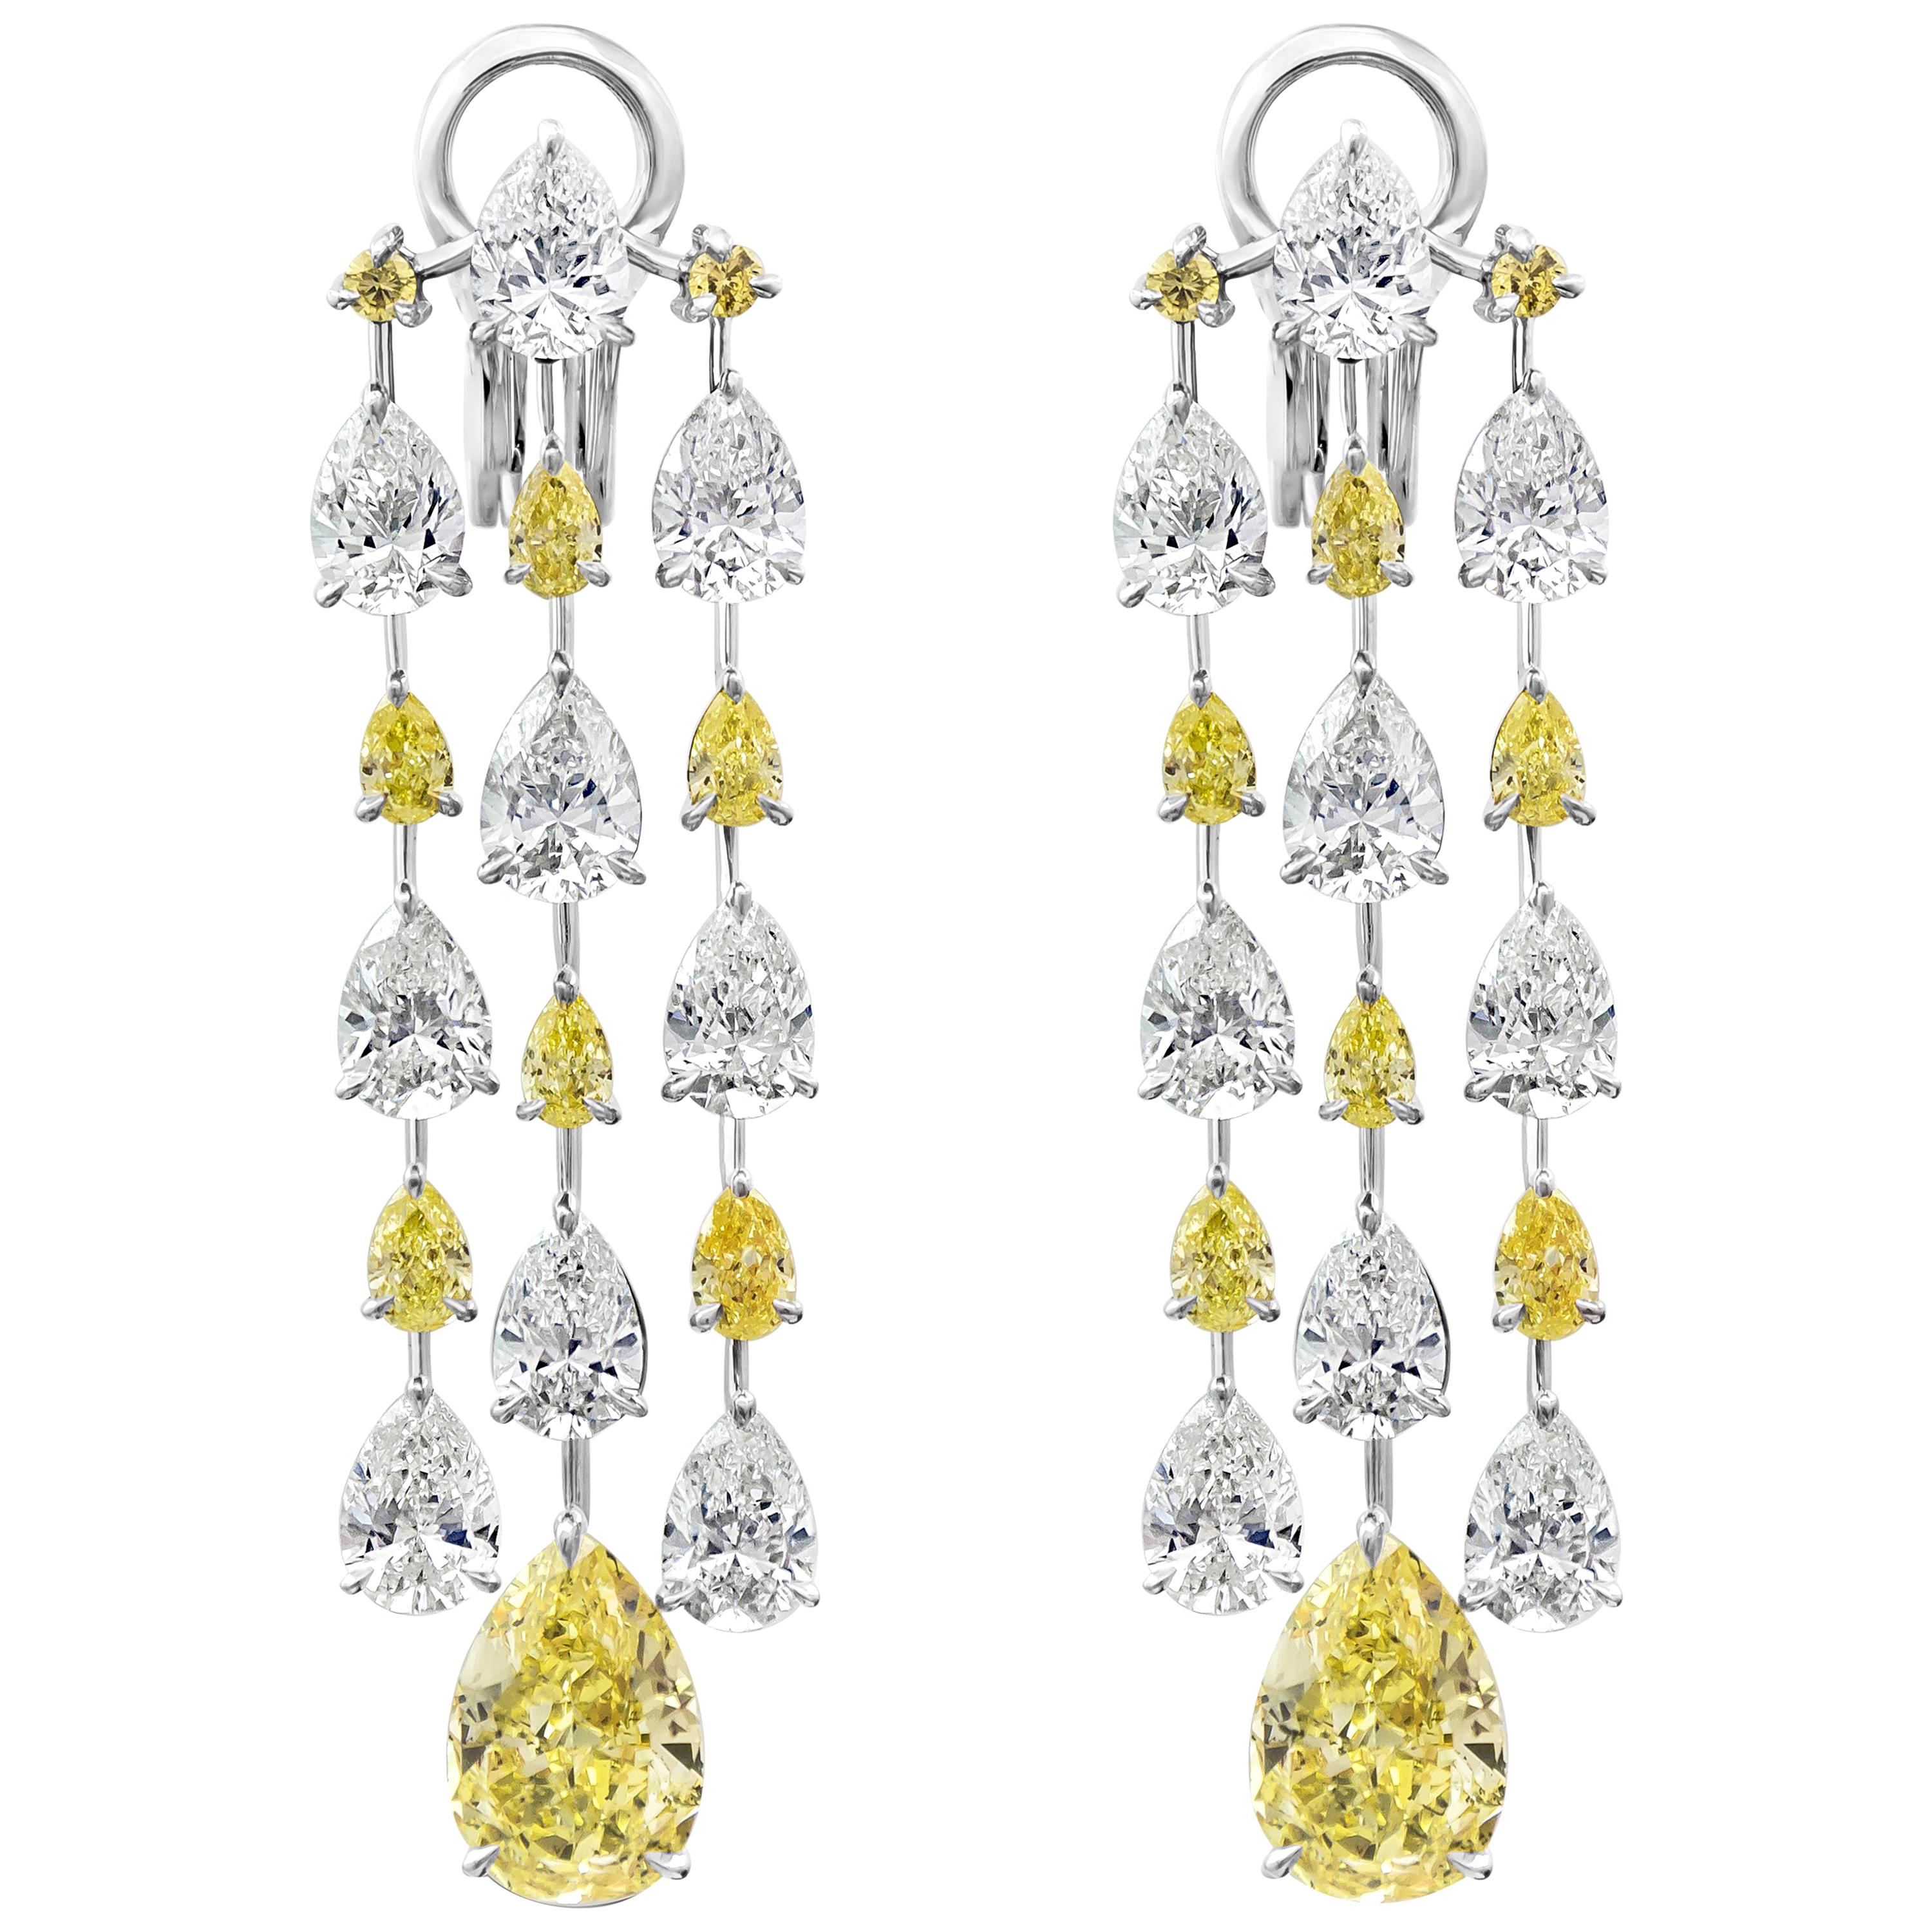 15.69 Carats Total Pear Shape Fancy Yellow White Diamond Chandelier Earrings For Sale